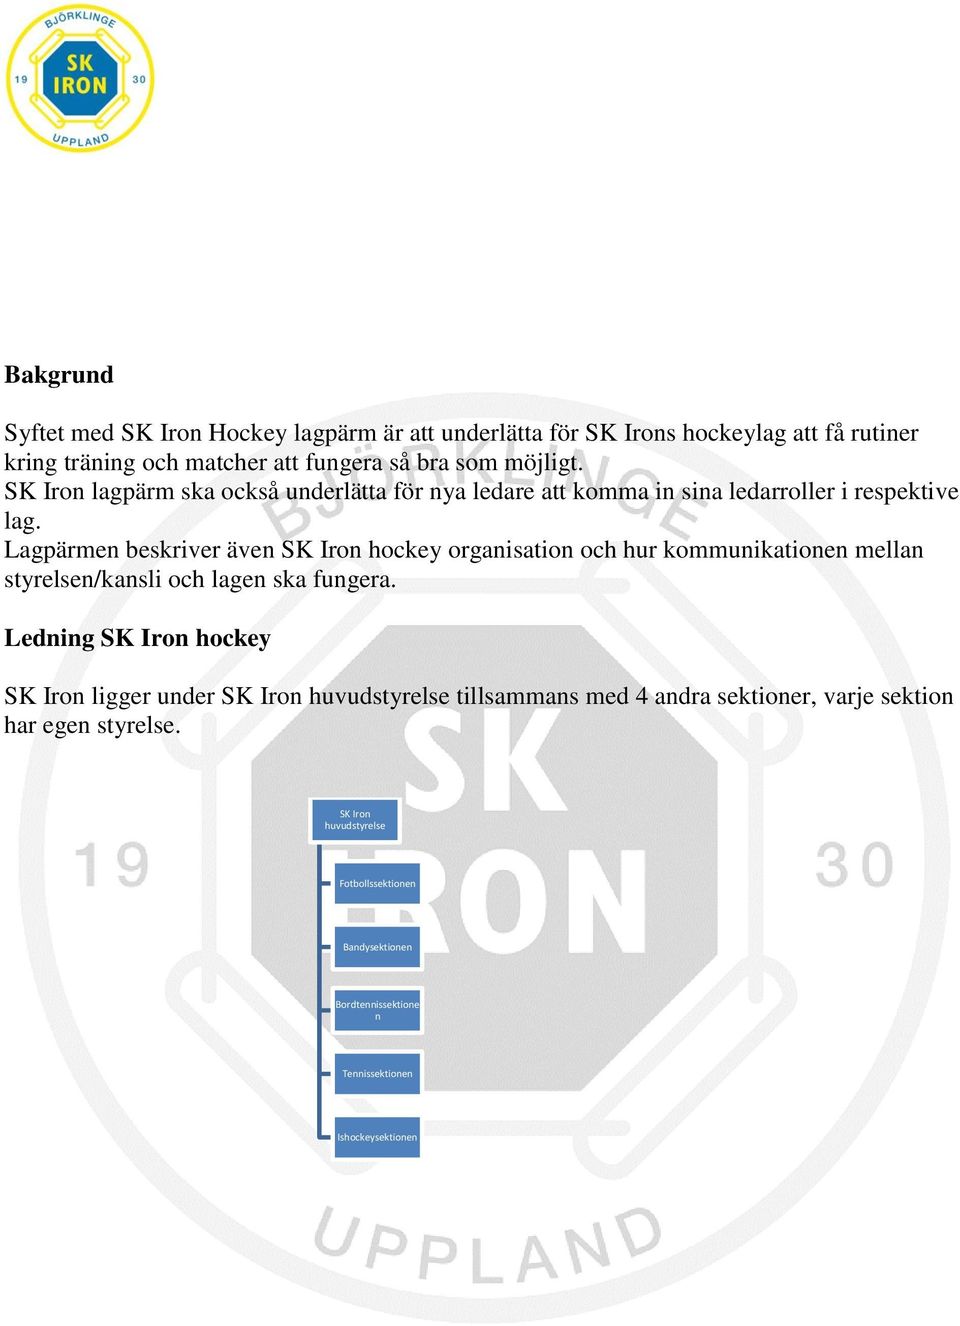 Lagpärmen beskriver även SK Iron hockey organisation och hur kommunikationen mellan styrelsen/kansli och lagen ska fungera.